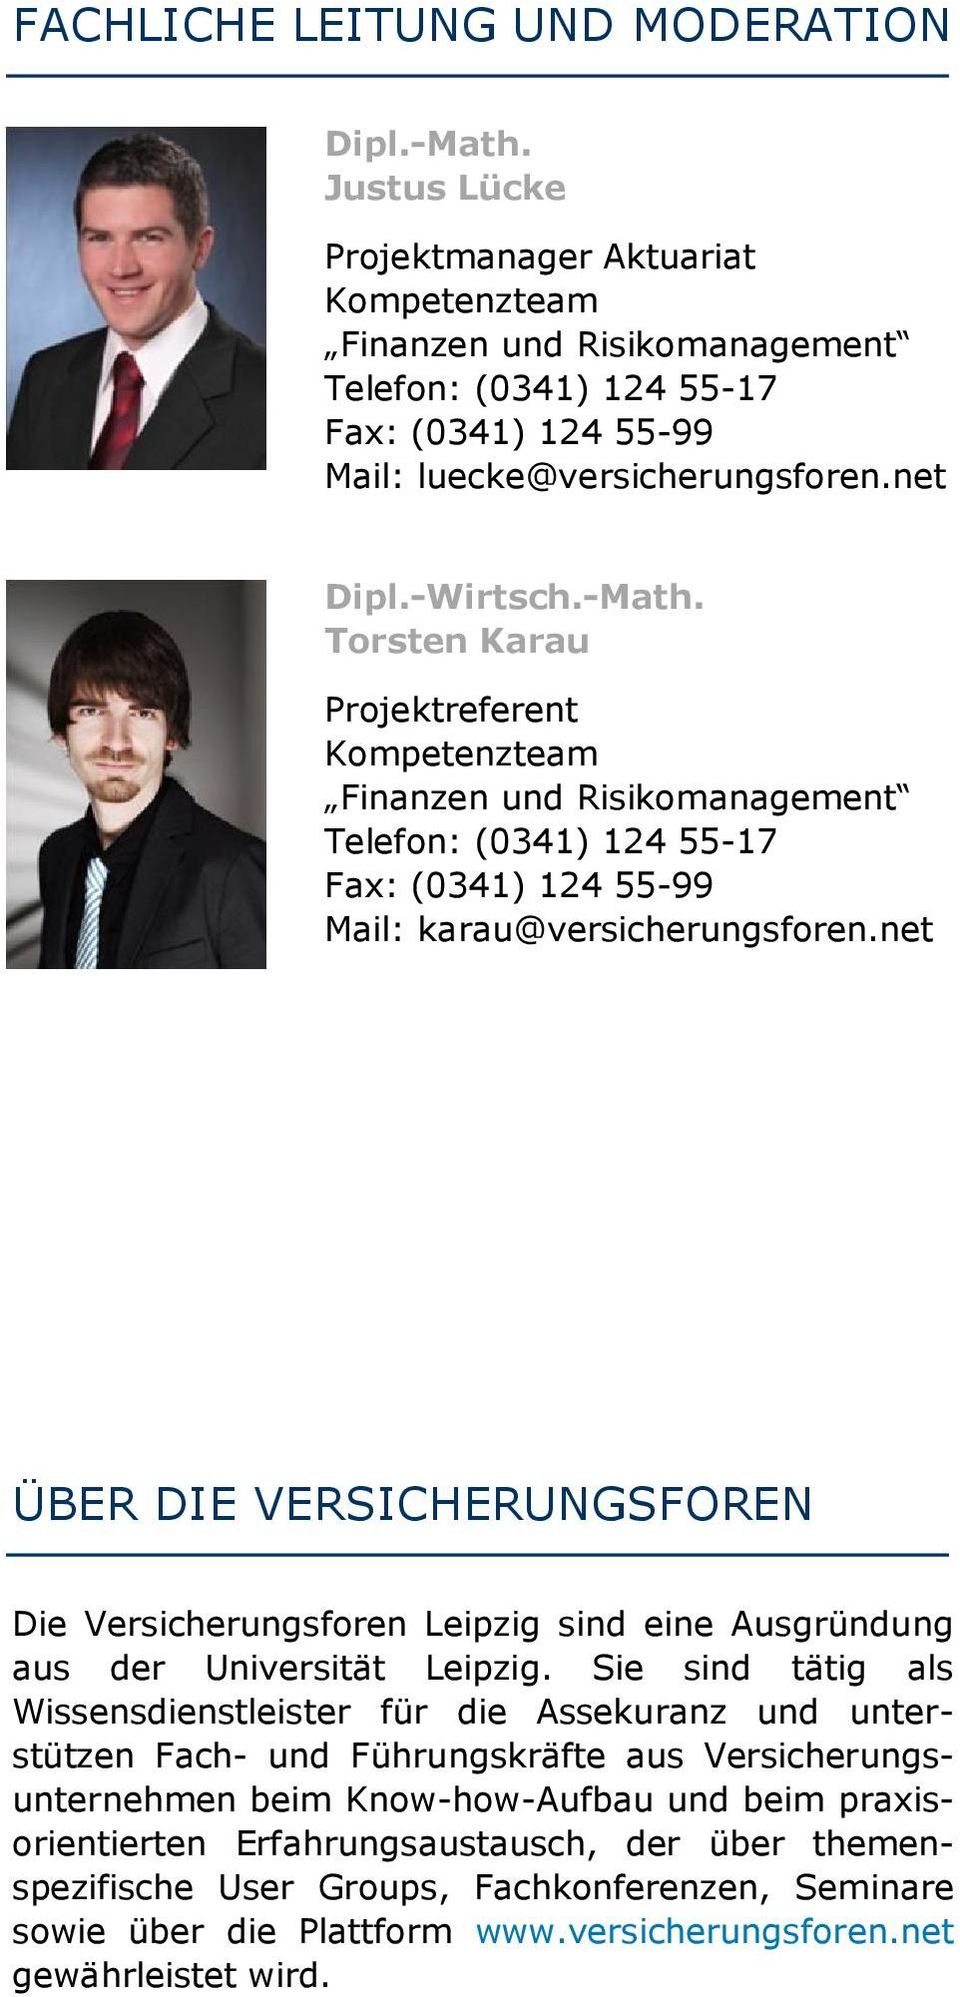 Torsten Karau Projektreferent Kompetenzteam Finanzen und Risikomanagement Telefon: (0341) 124 55-17 Fax: (0341) 124 55-99 Mail: karau@versicherungsforen.